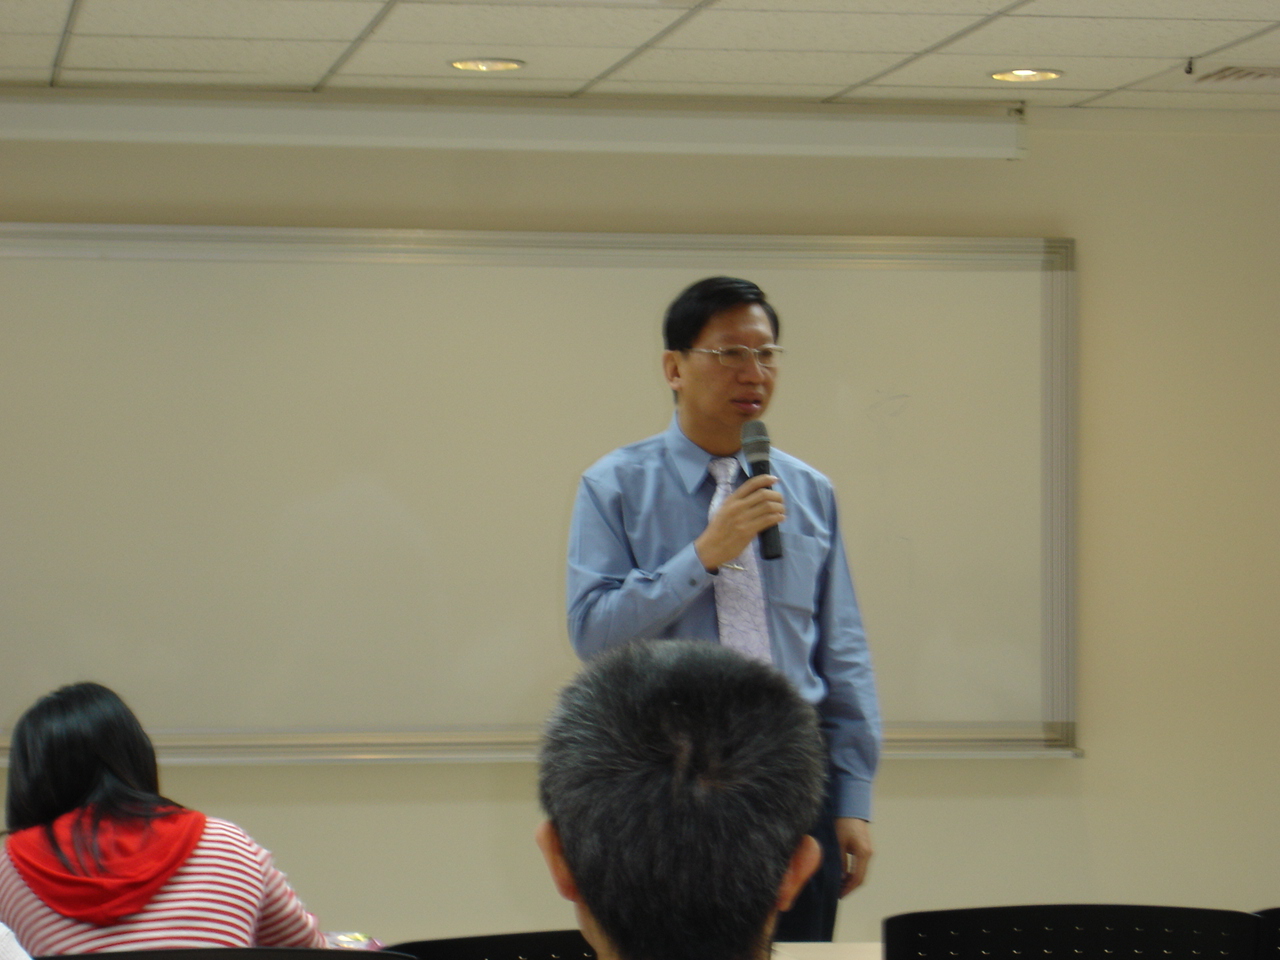 第一節課程由台北縣立醫院沈希哲院長為學們們帶來有關「養生之道」的課程